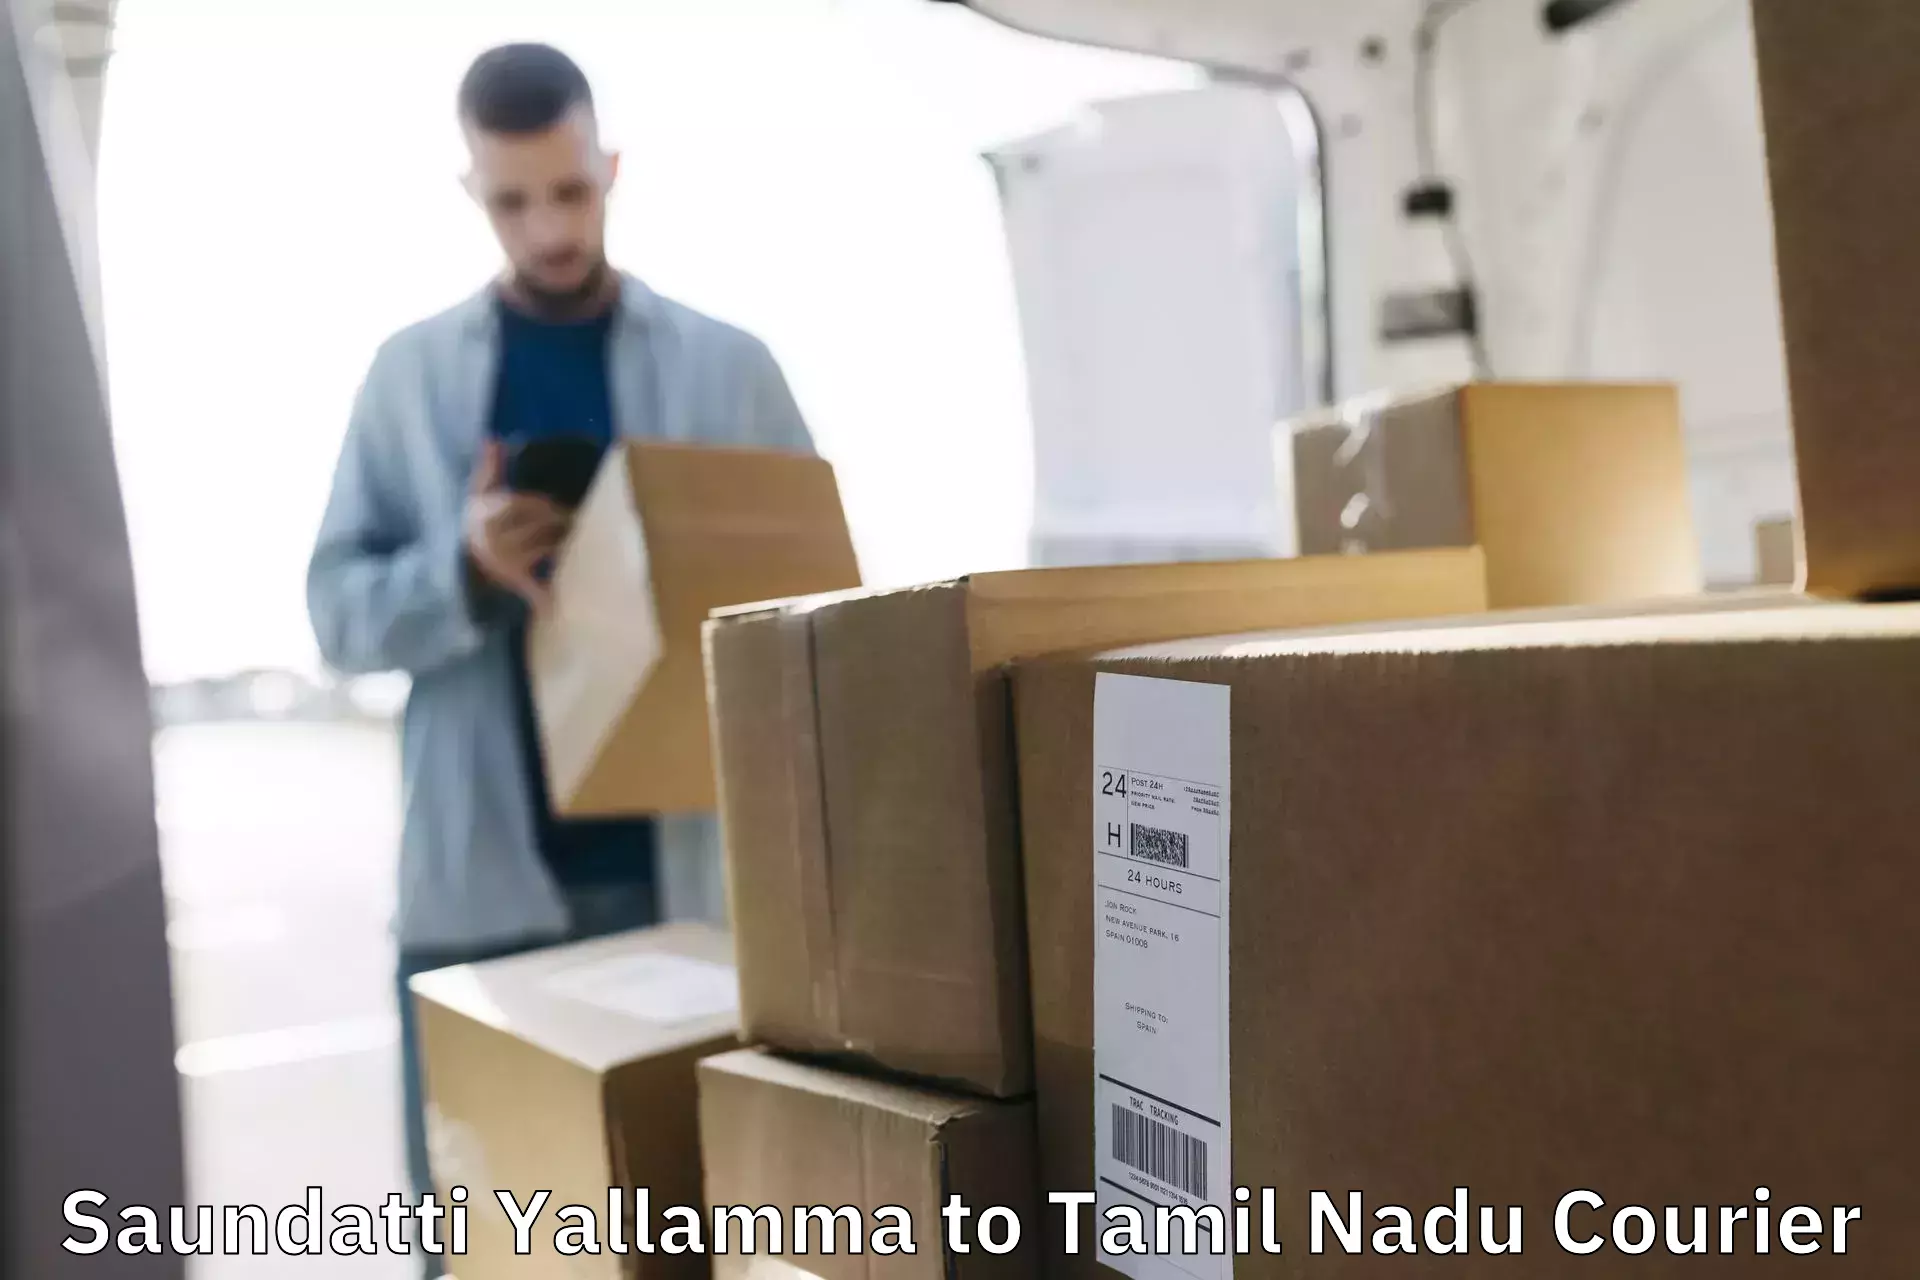 Full-service courier options Saundatti Yallamma to Devakottai